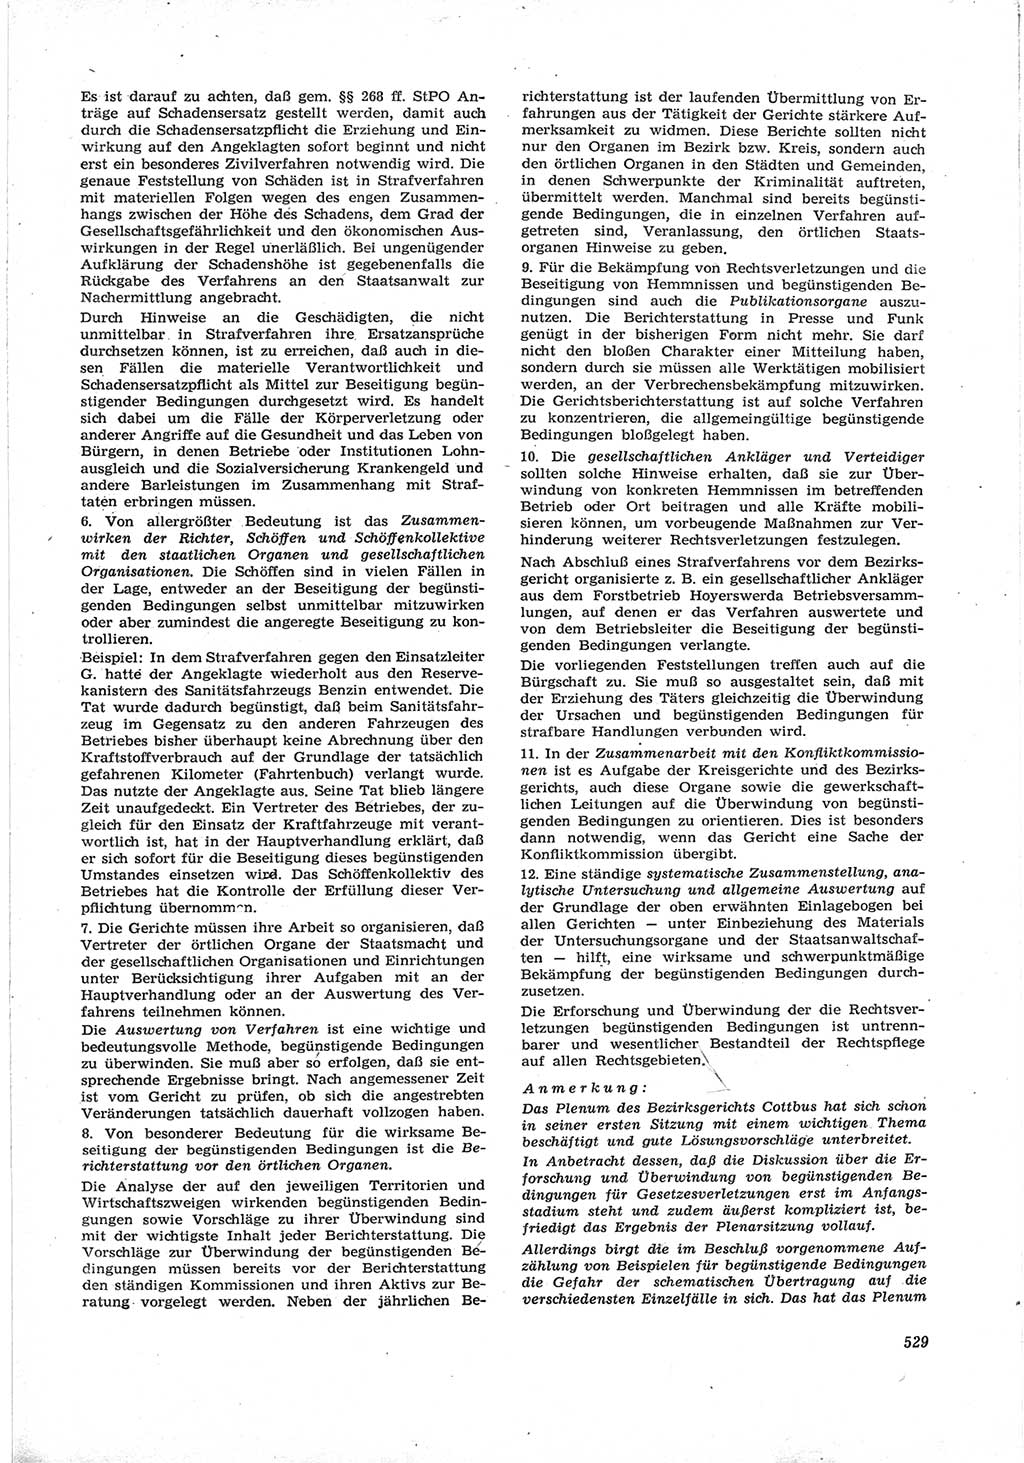 Neue Justiz (NJ), Zeitschrift für Recht und Rechtswissenschaft [Deutsche Demokratische Republik (DDR)], 17. Jahrgang 1963, Seite 529 (NJ DDR 1963, S. 529)